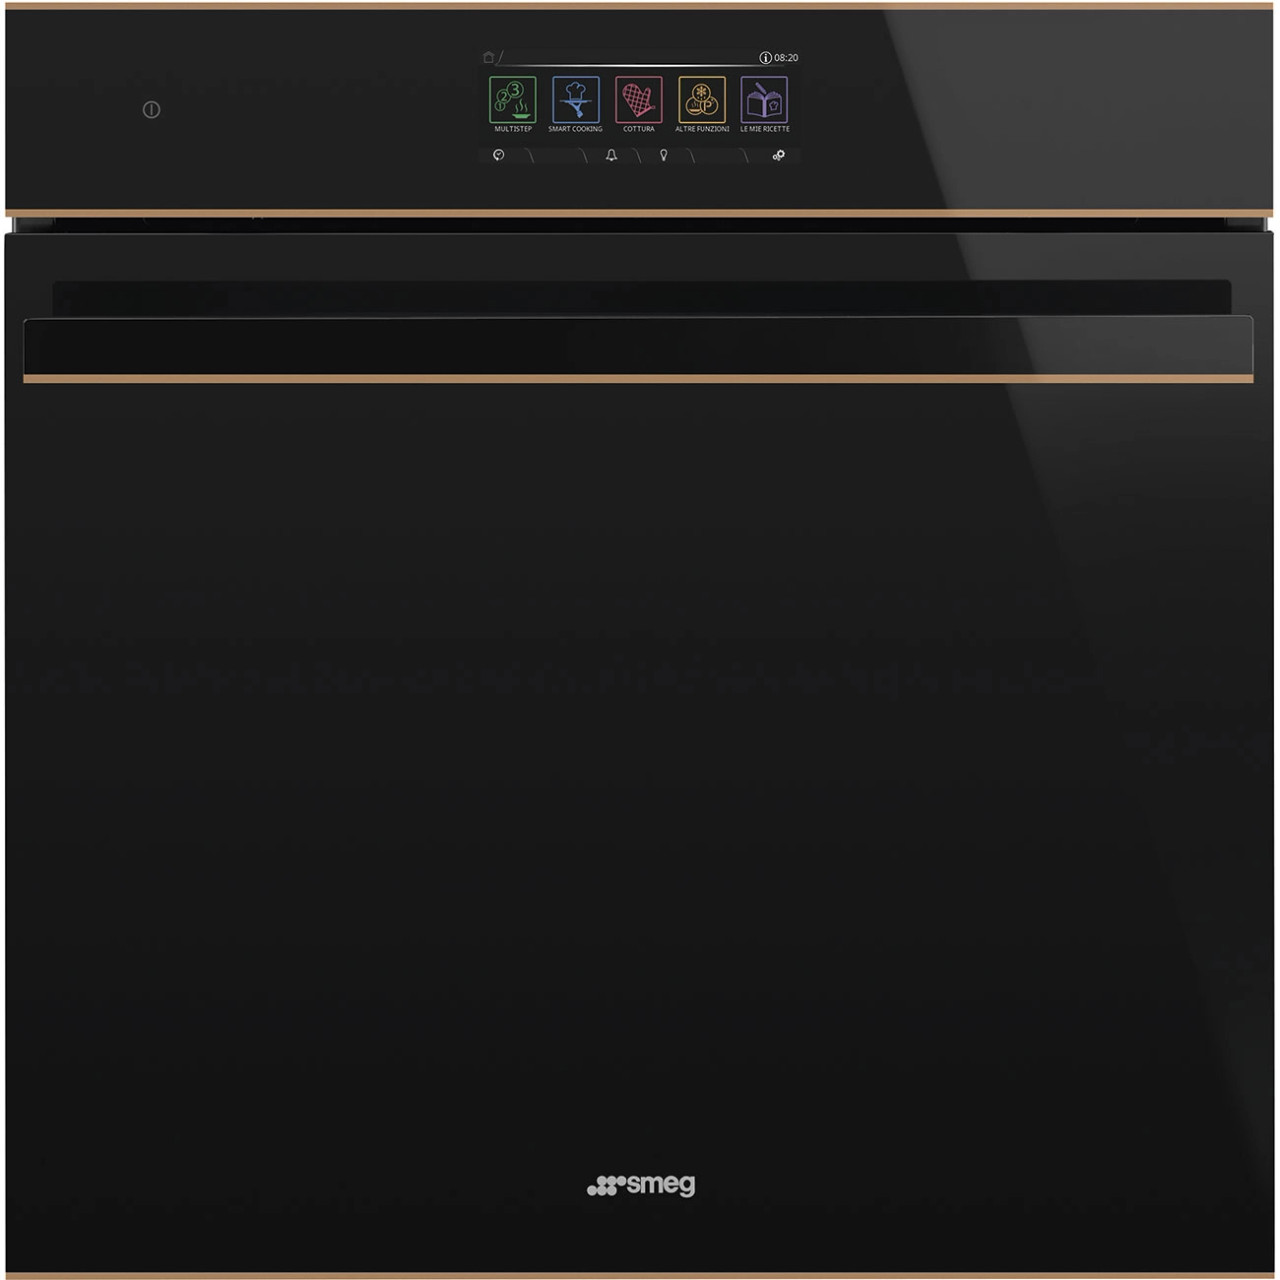 SOA6606M2PNR - 60cm Dolce Stil Novo Speedwave XL Combi Microwave Oven - Black